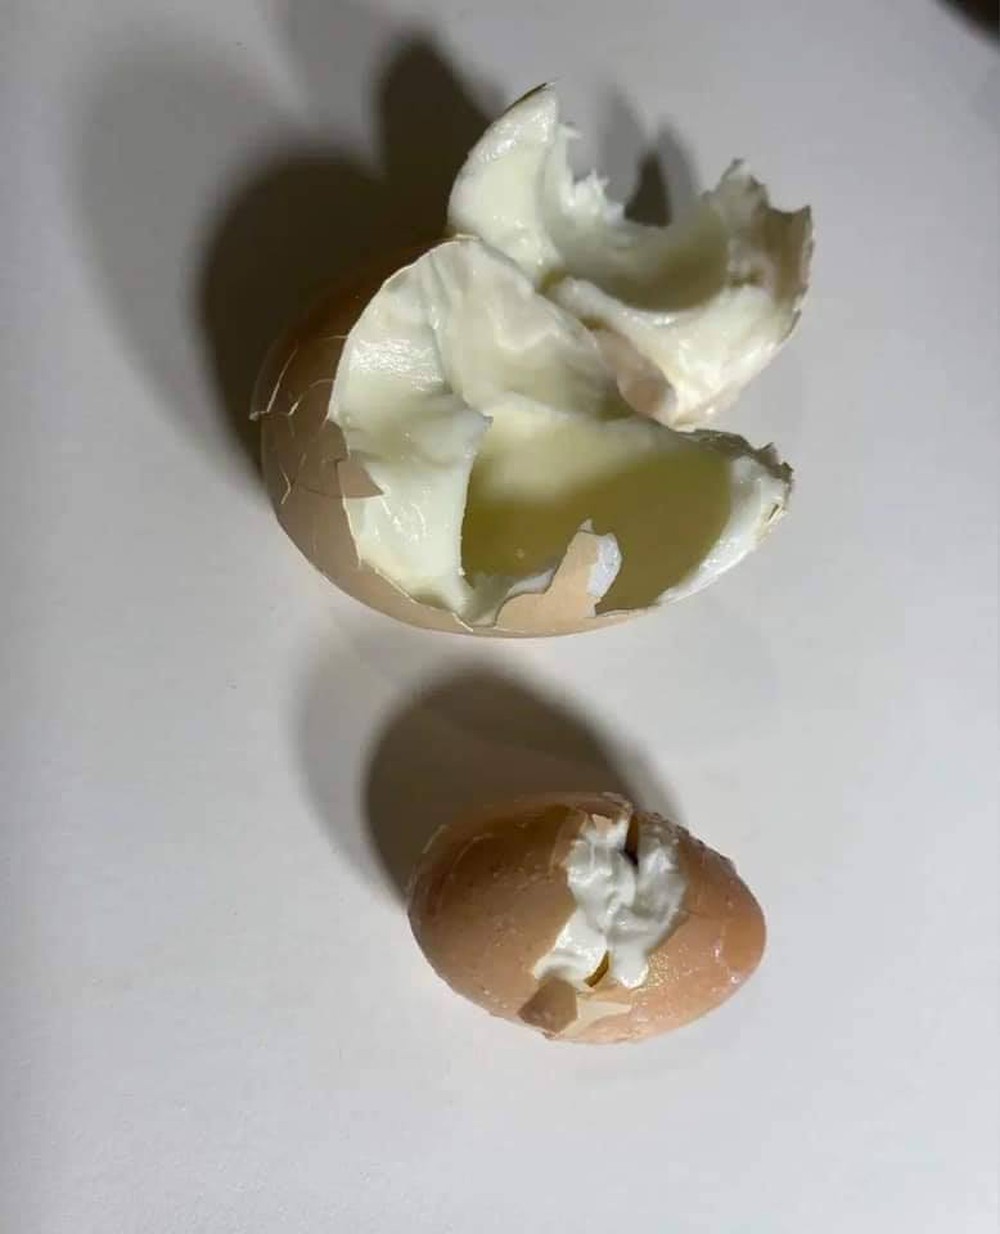 Bóc trứng gà luộc, cô gái bất ngờ khi phát hiện điều kỳ lạ ở bên trong - Ảnh 1.